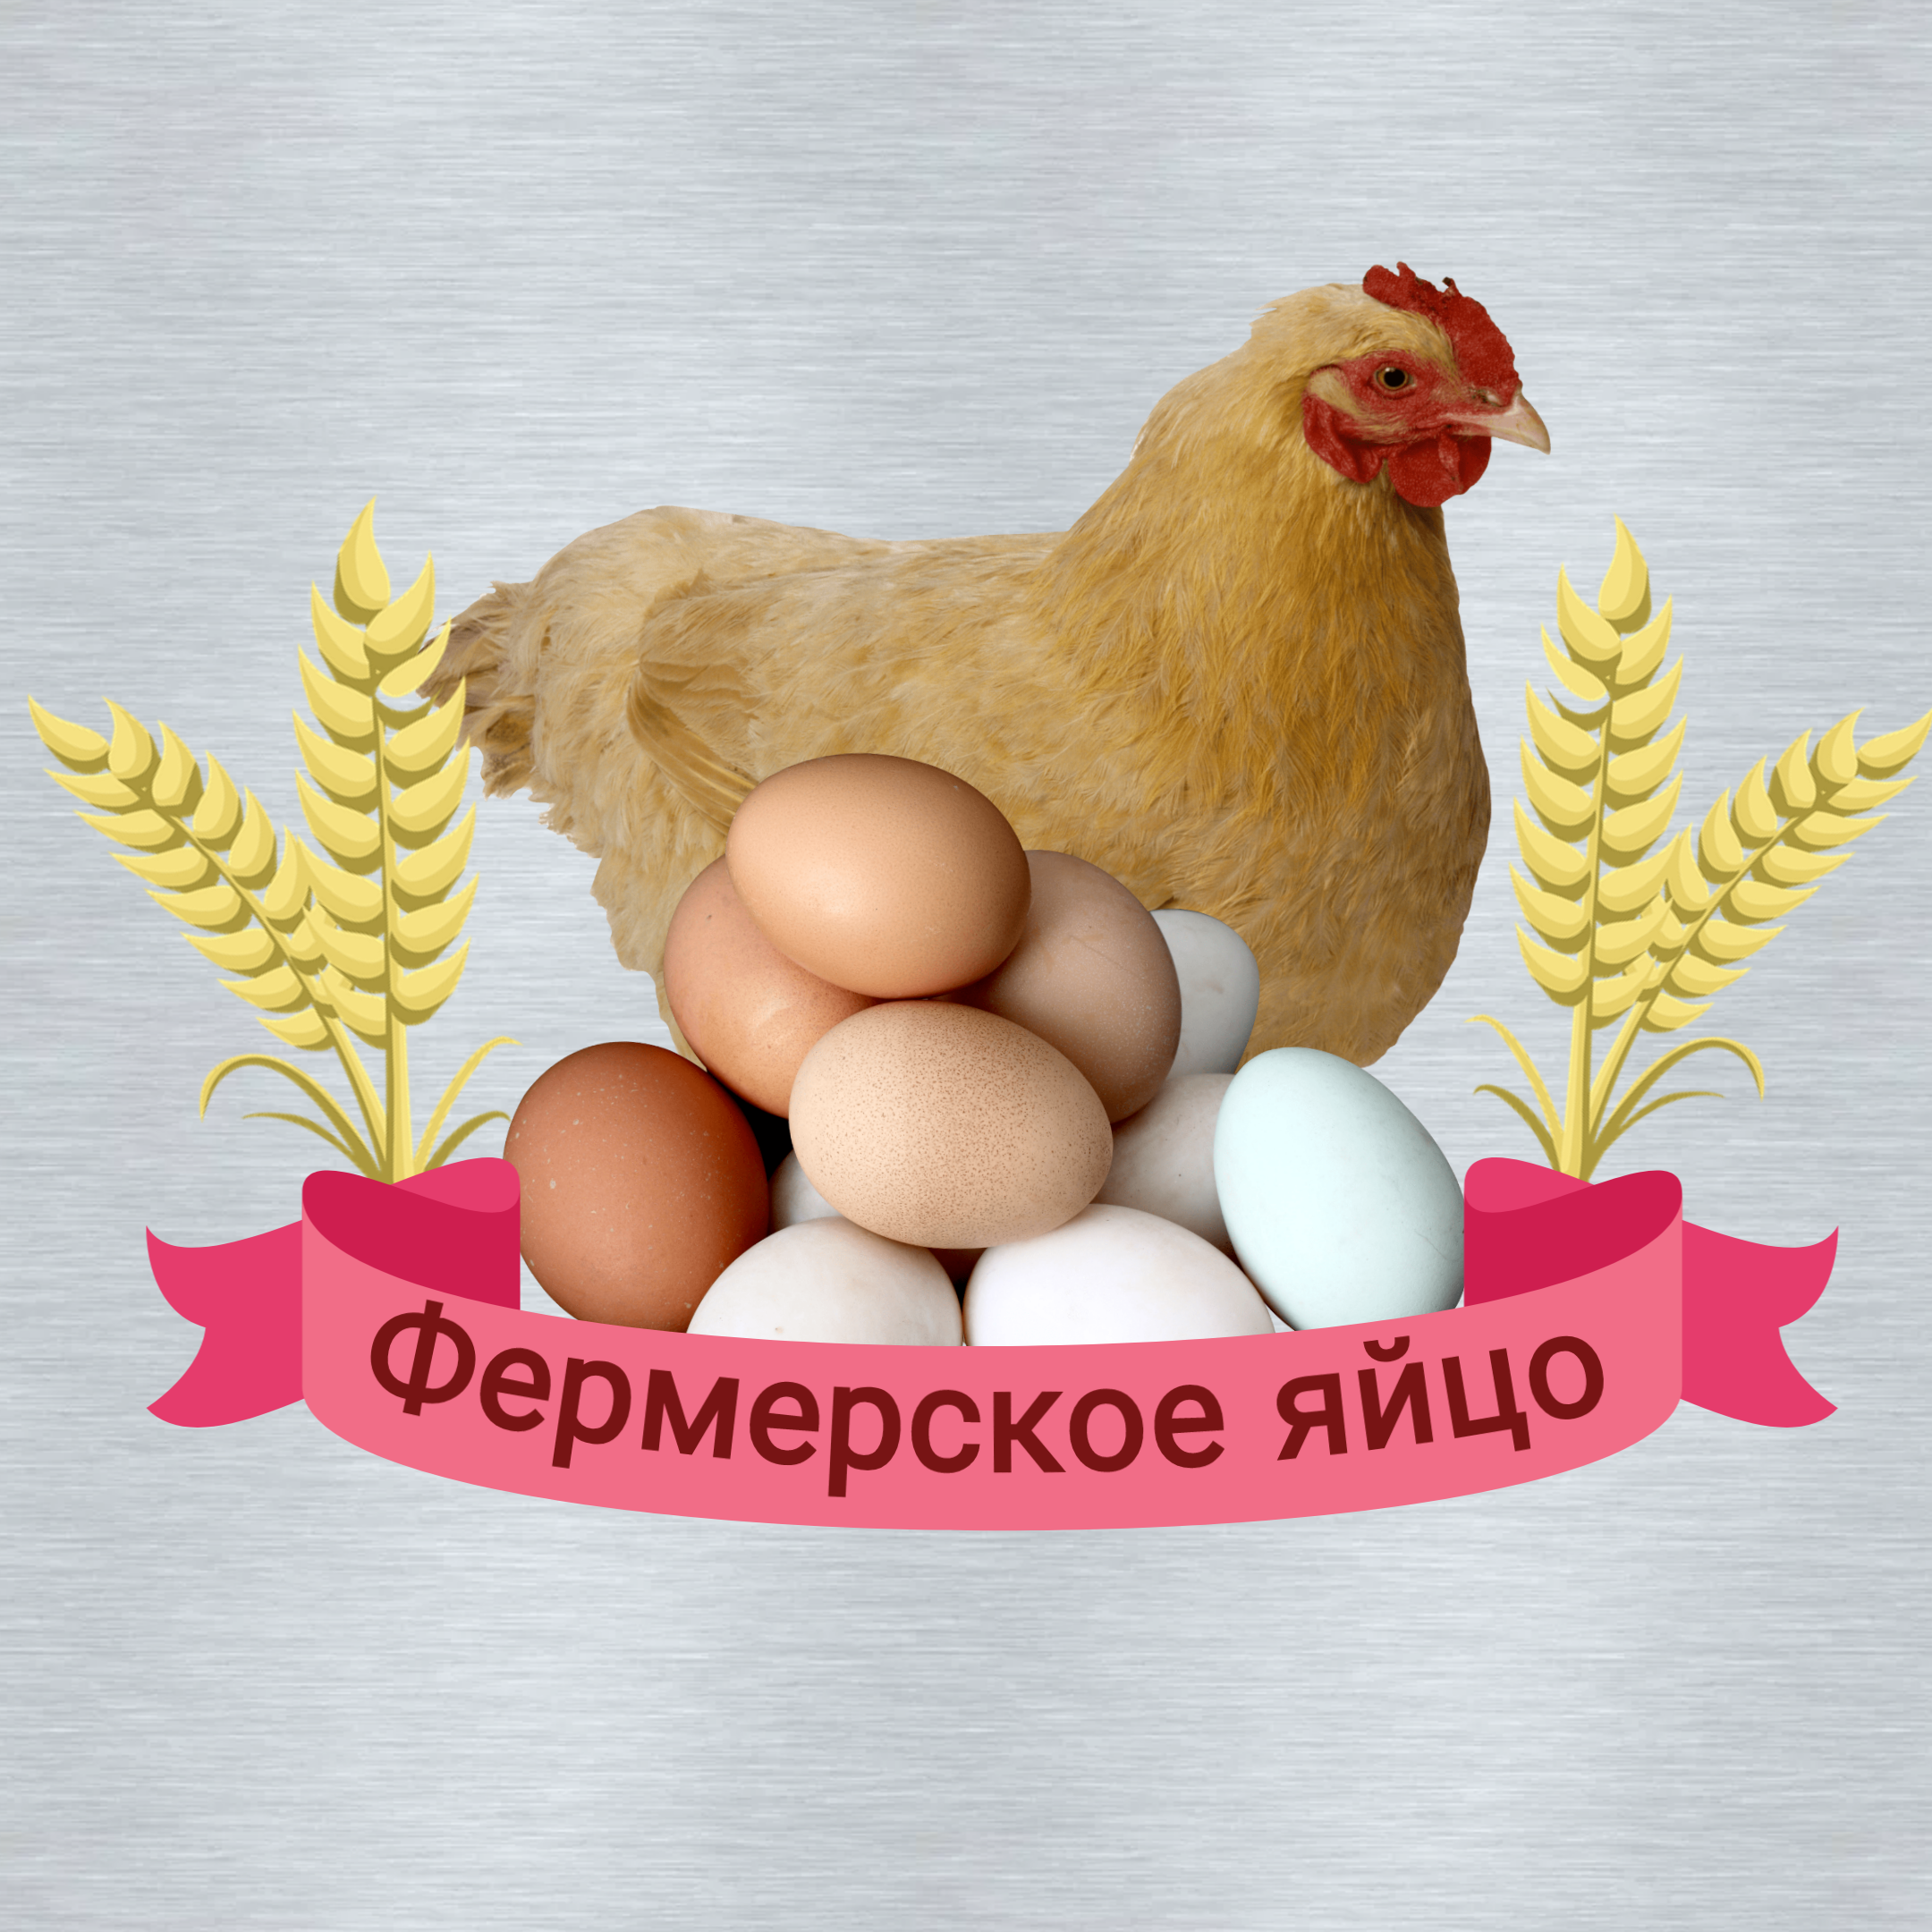 Логотип «Фермерское яйцо»